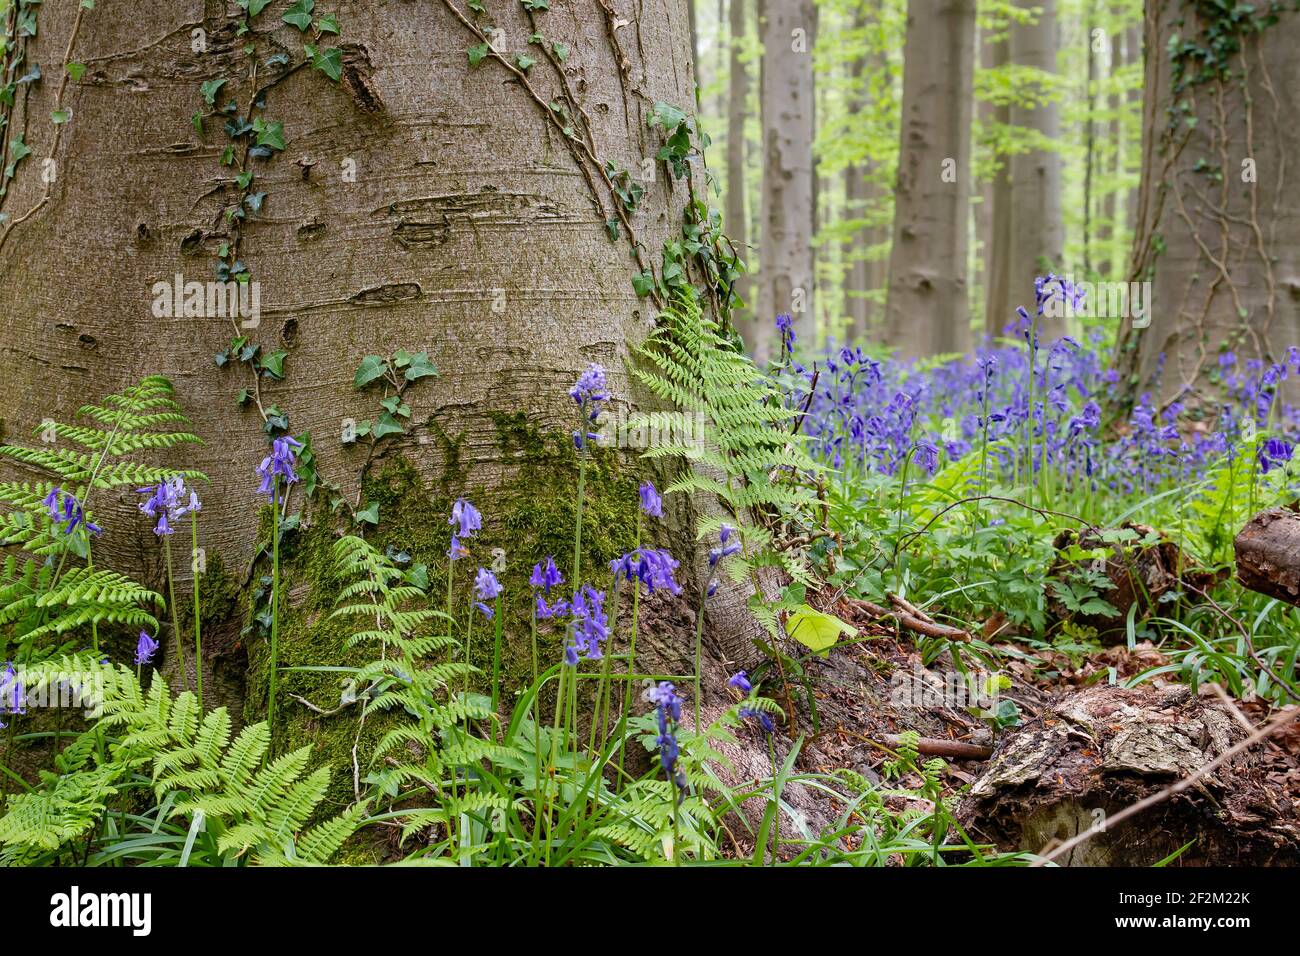 Détail de l'écosystème de la forêt printanière avec des fleurs de bluebell pourpres en fleurs et une végétation sauvage parmi les hêtres, la nature et le concept environnemental Banque D'Images